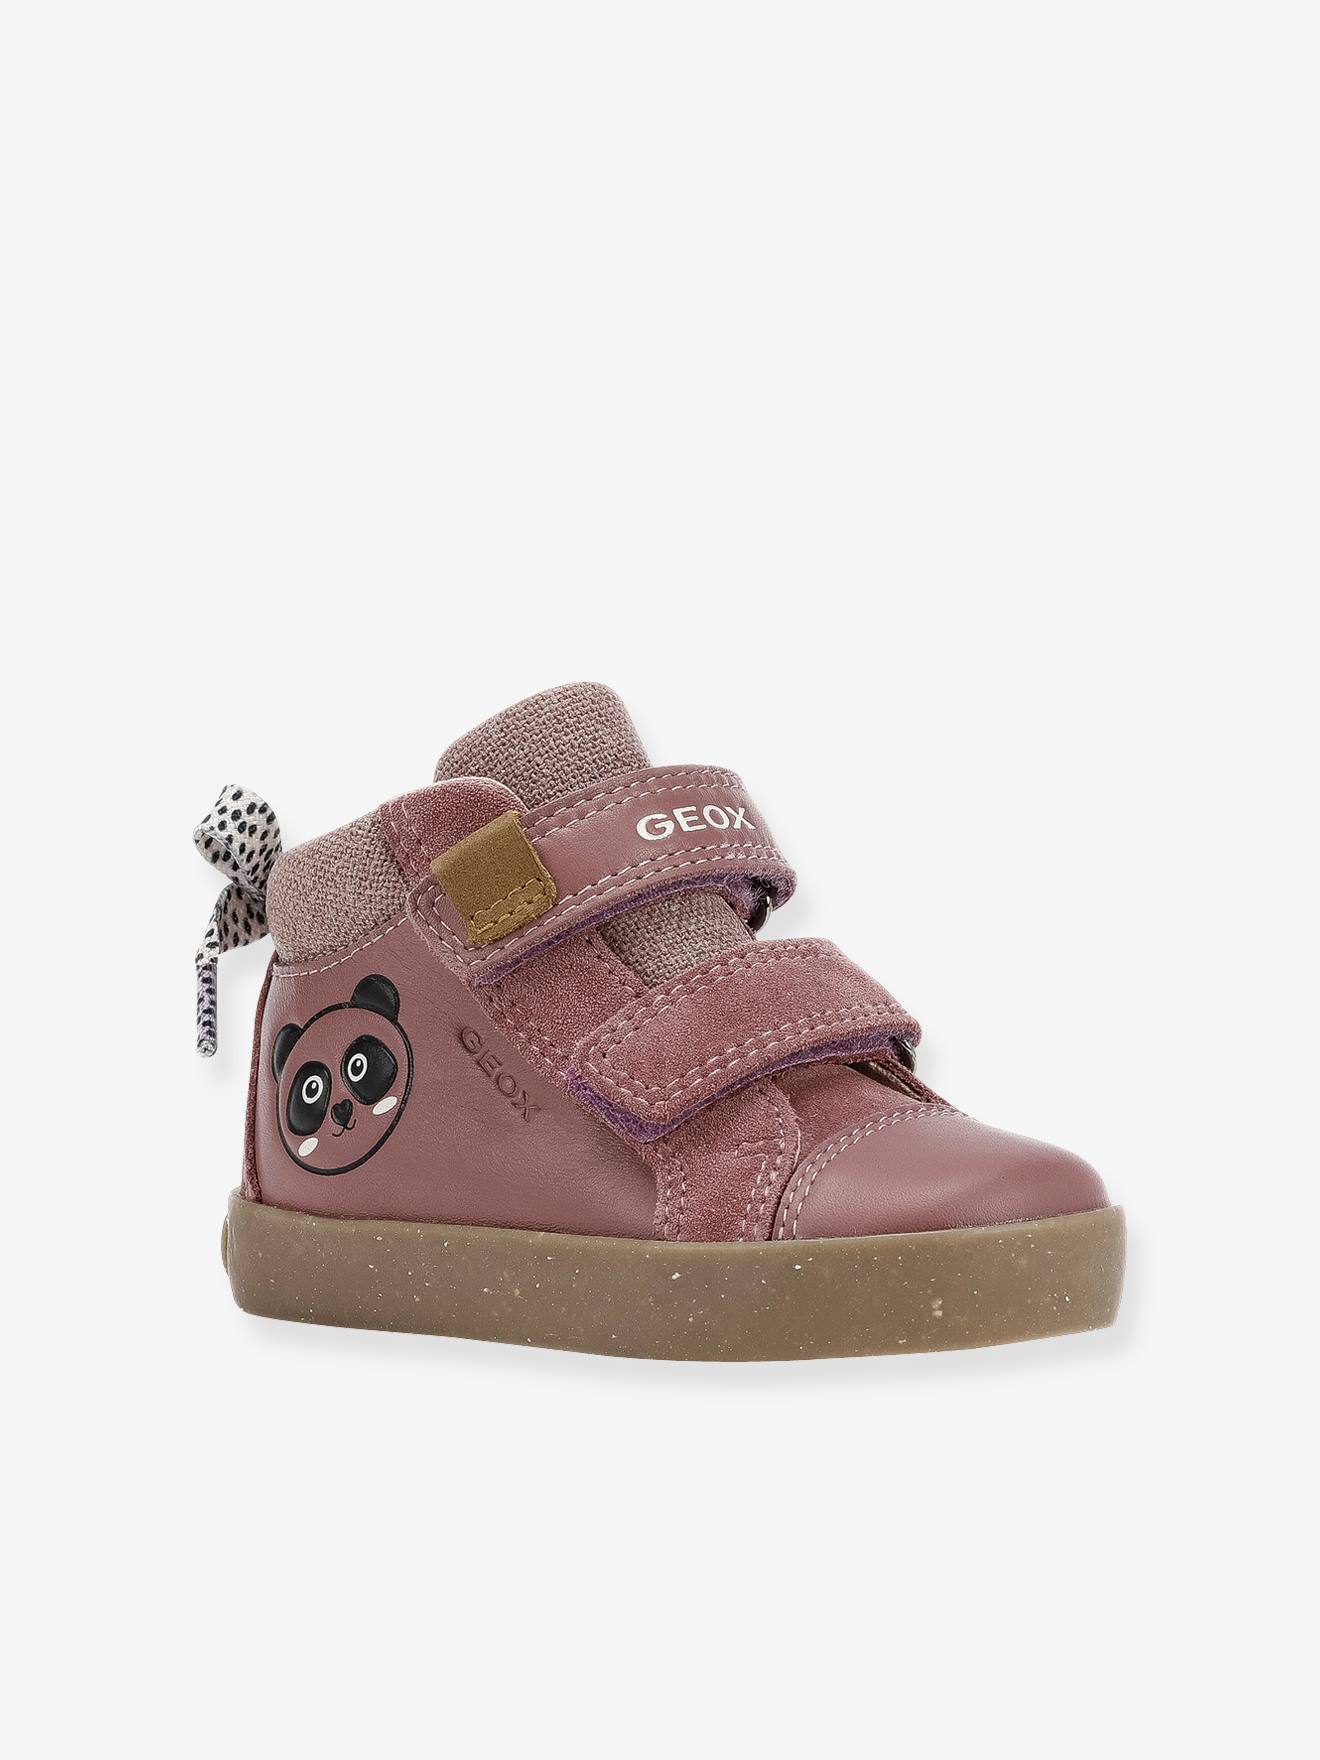 Geox Baby Girls/’ B Kilwi Low-Top Sneakers